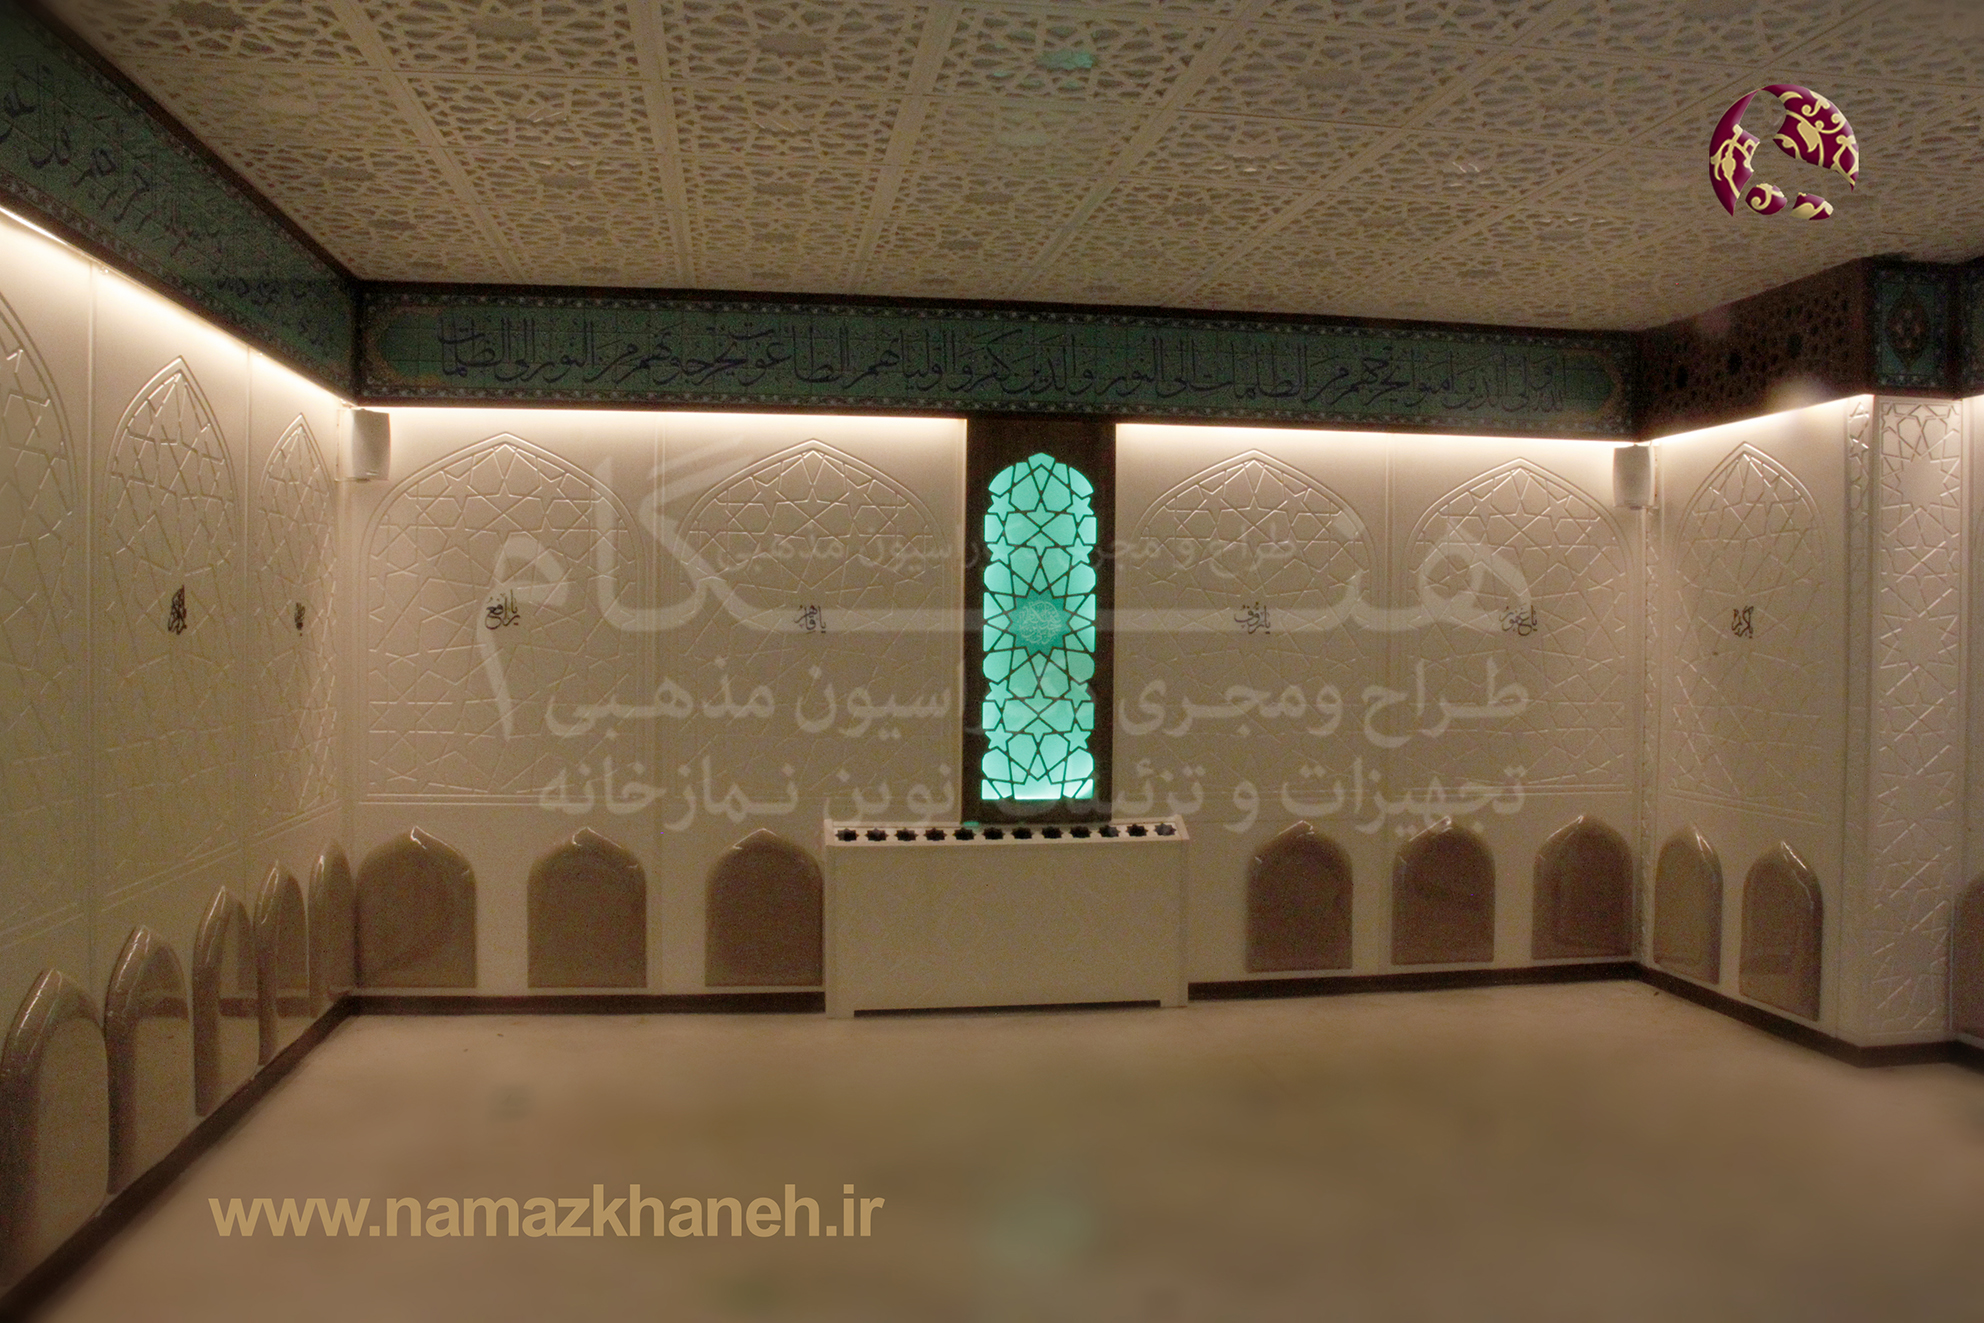  استفاده از رنگ روشن  و نور در دکور نمازخانه و تلفیق آن با هنر سنتی و اسلامی باعث زیبایی بیش از پیش این نمازخانه شده است.تجهیز نمازخانه به نور مناسب و فضاسازی جدید اشتیاق نمازگذاران را برای عبادت بیشتر می‌کند